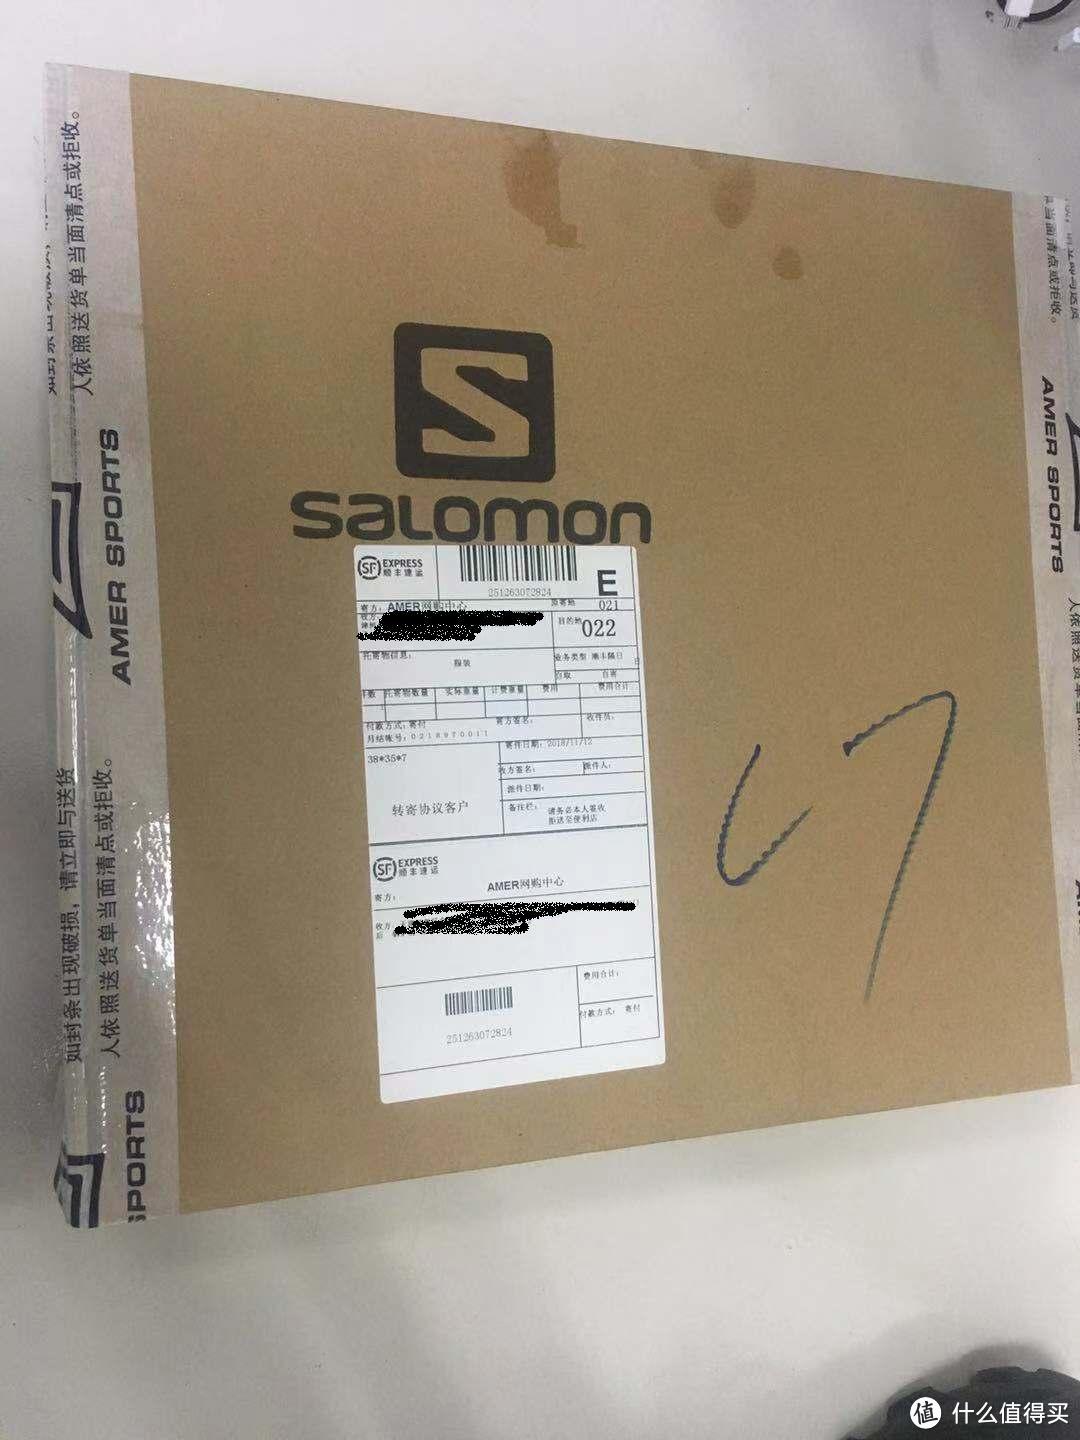 Salomon的盒子，amer可能是国内代理公司吧